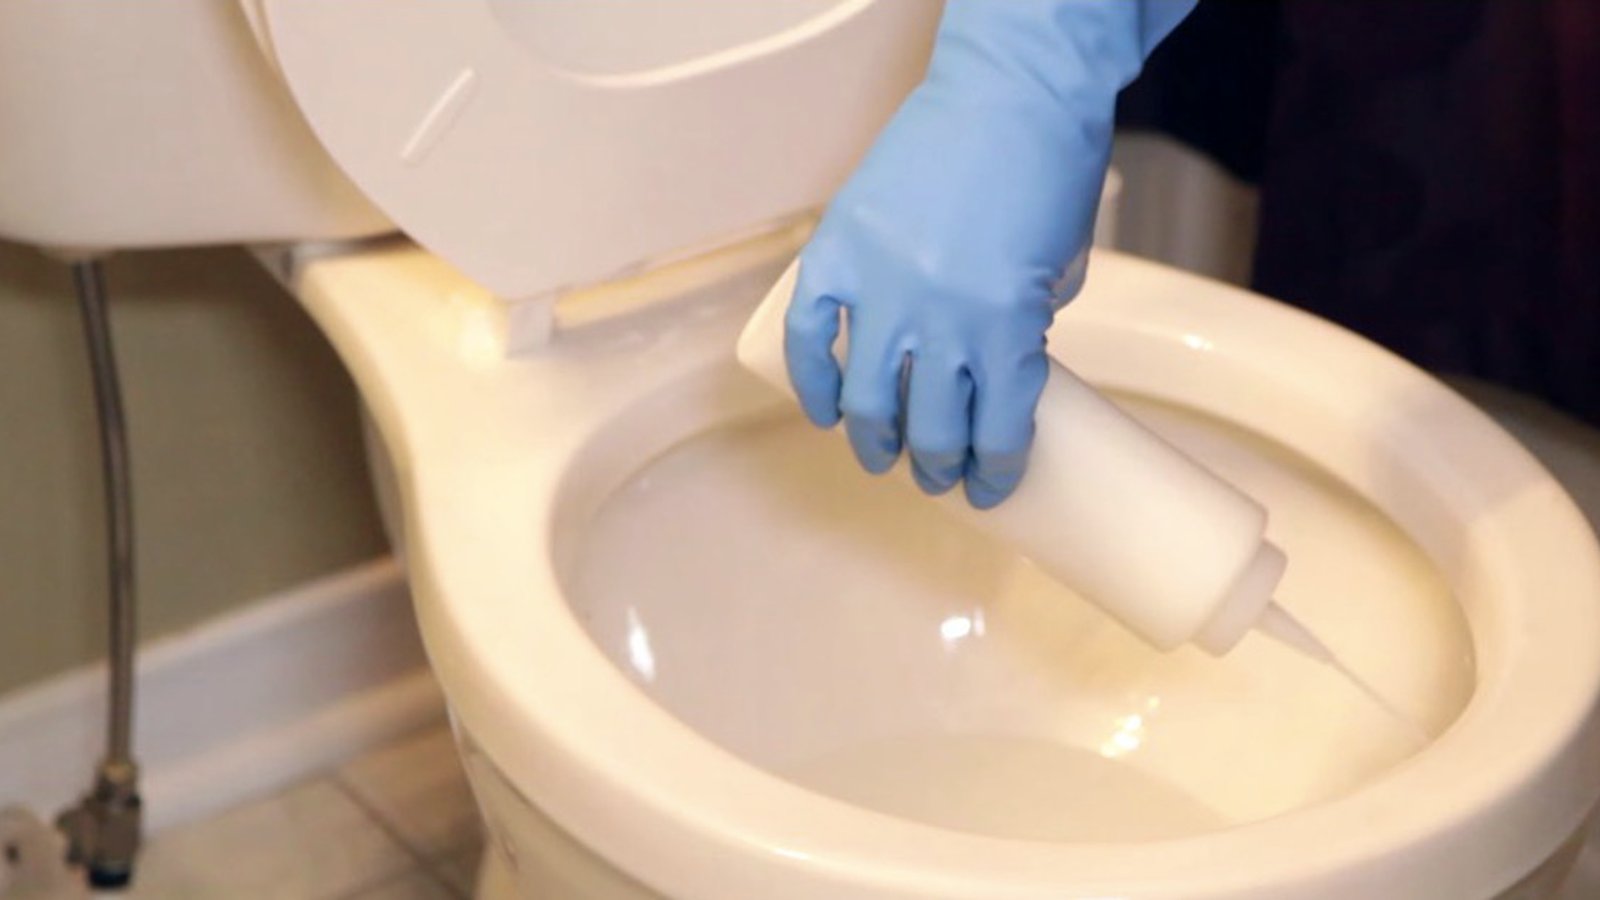 Faites votre propre nettoyant maison pour les toilettes en suivant cette recette